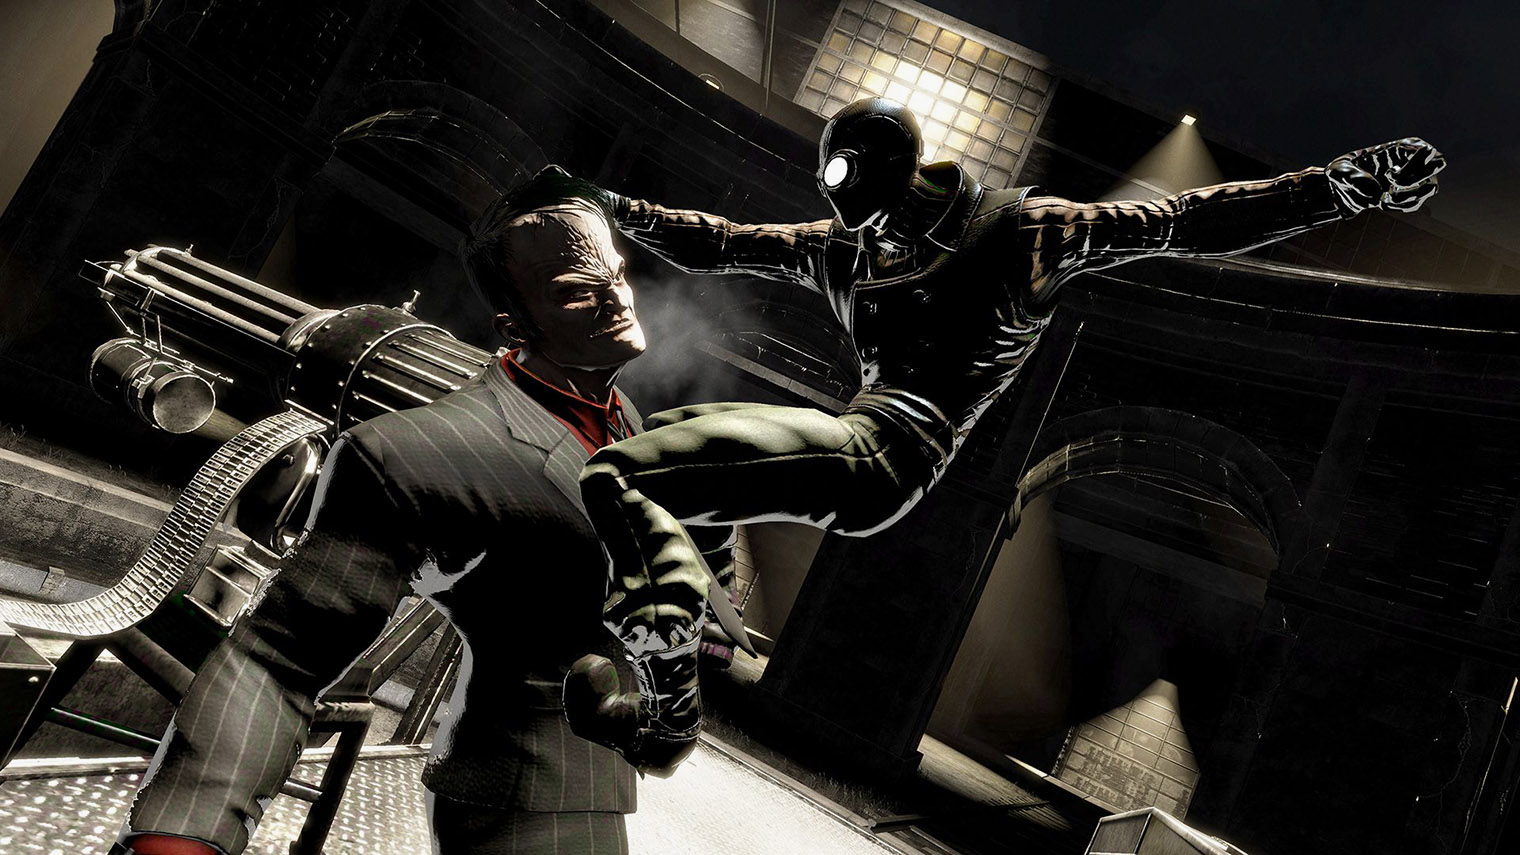 В нуарной версии Человек-паук часто полагается на скрытность, как Бэтмен в серии Batman: Arkham. Источник: Activision